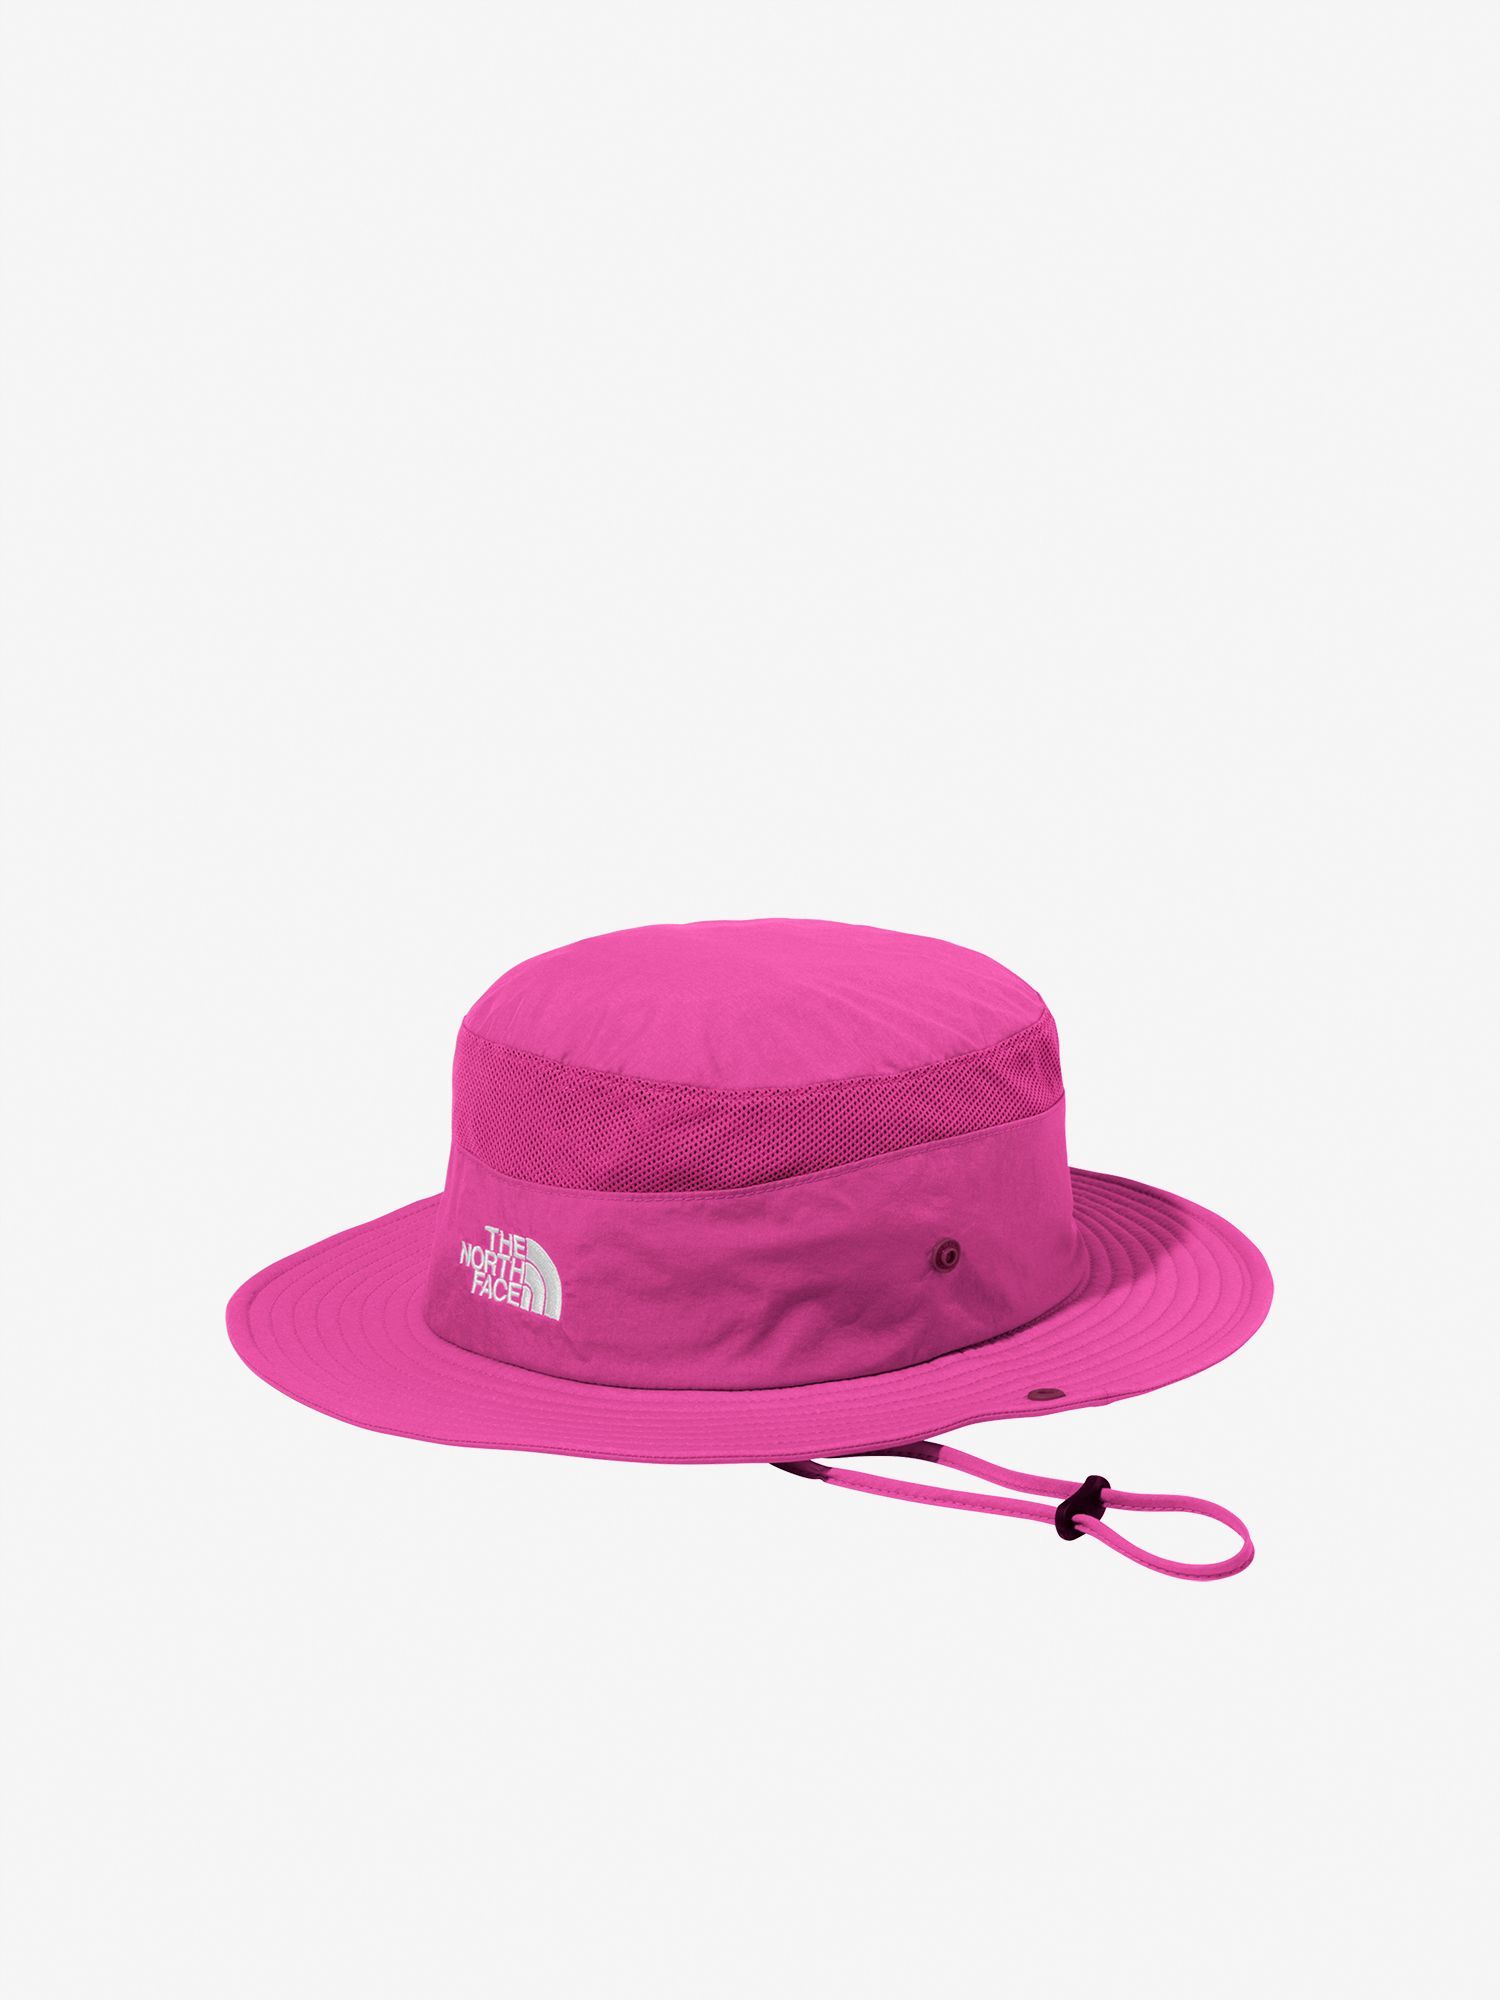 ケルプタン★ノースフェイス ★ 帽子 Brimmer Hat